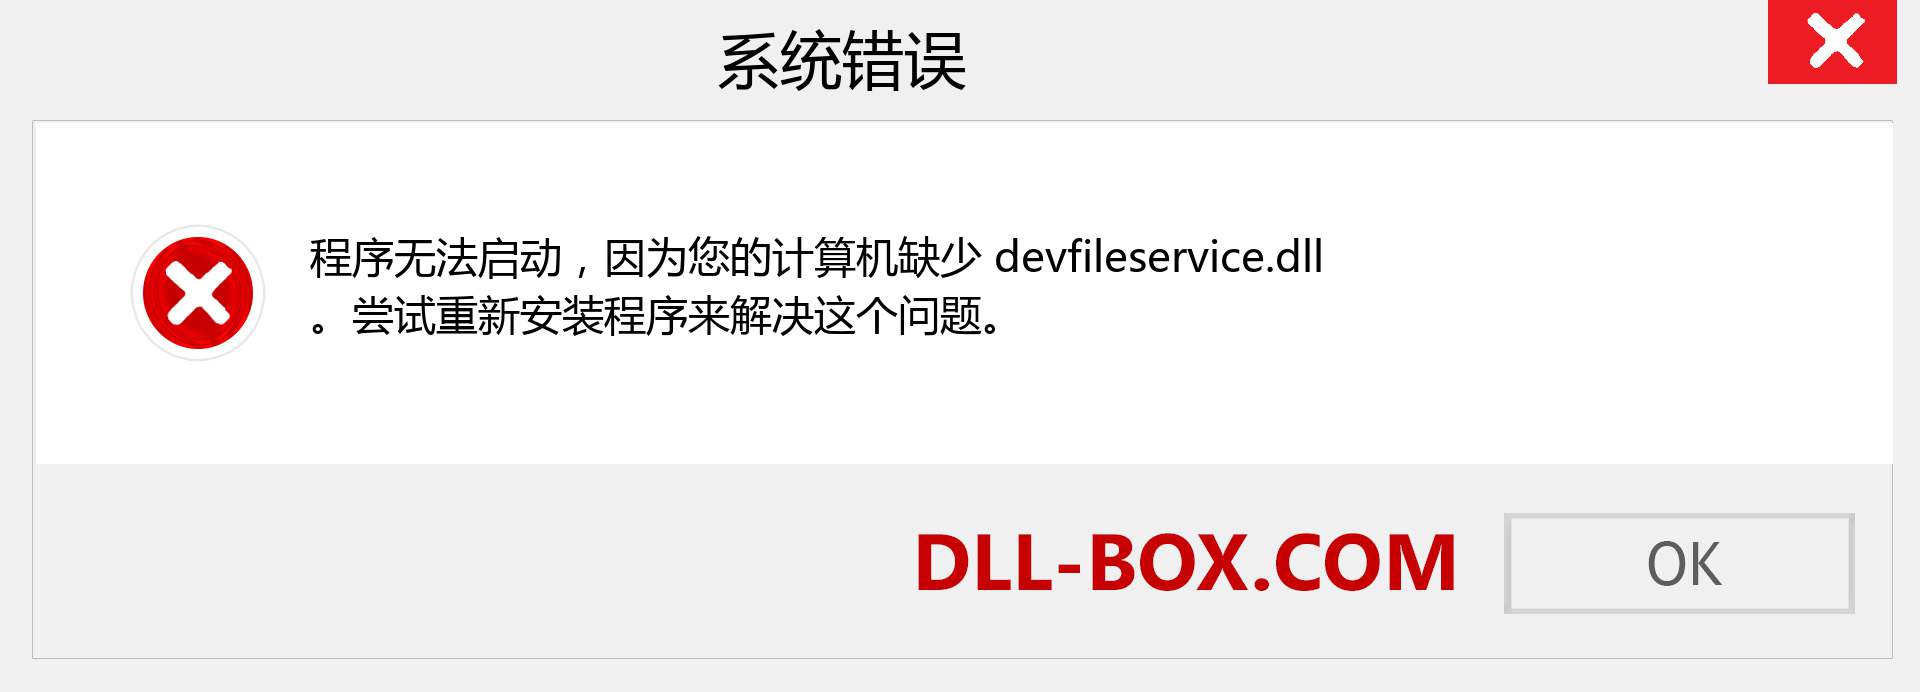 devfileservice.dll 文件丢失？。 适用于 Windows 7、8、10 的下载 - 修复 Windows、照片、图像上的 devfileservice dll 丢失错误